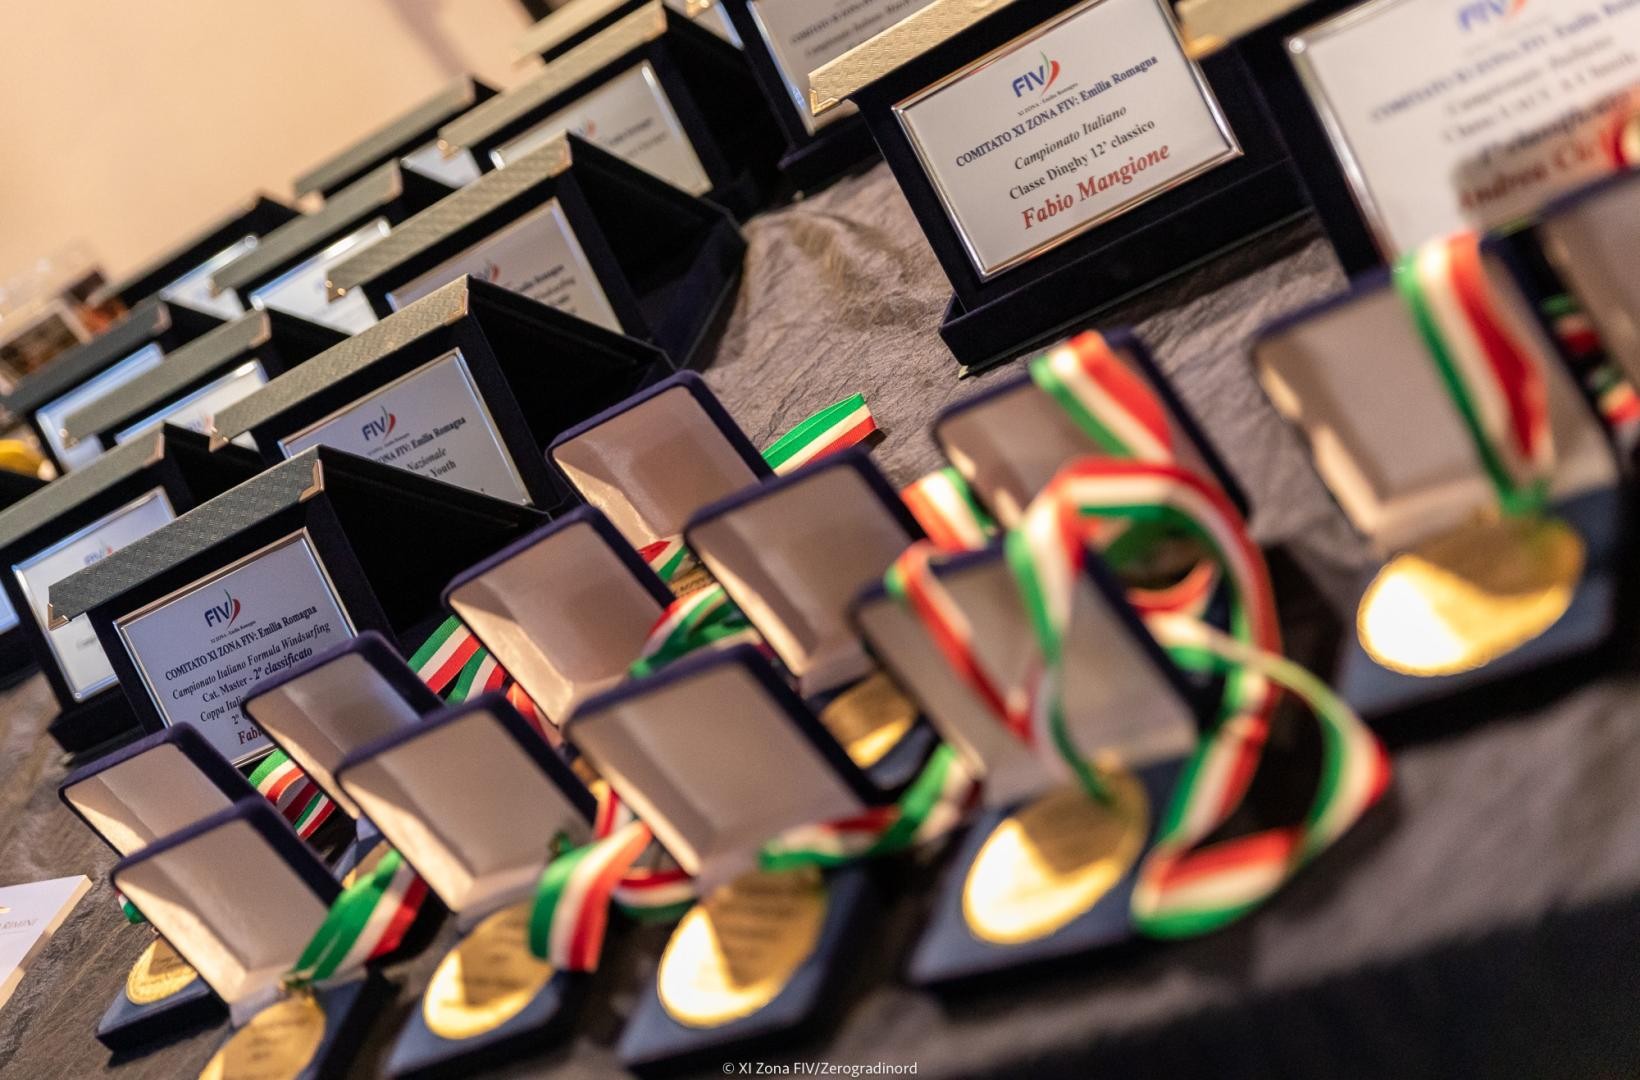 L'evento, condotto dal giornalista Mauro Melandri, ha premiato oltre sessanta velisti fra campioni zonali delle classi olimpiche e propedeutiche